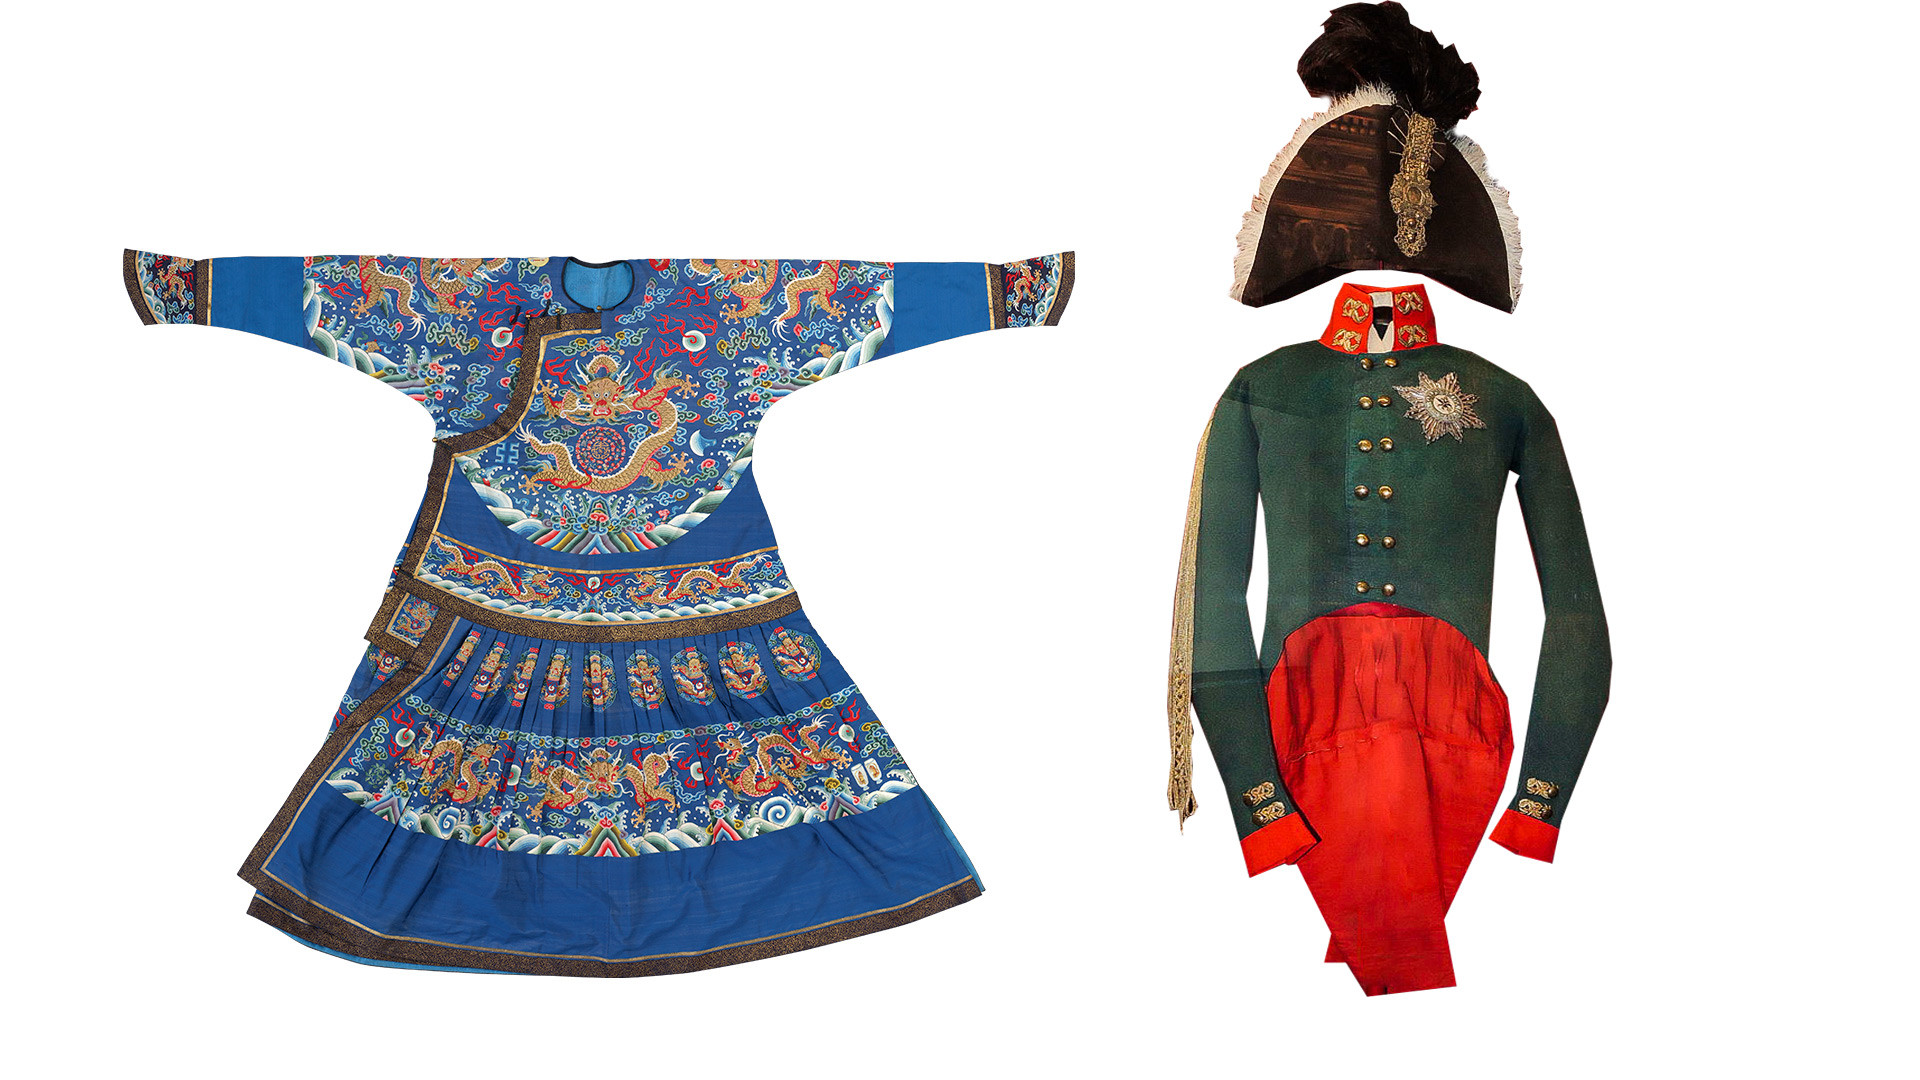 Слева: Парадное одеяние императора – халат чаопао. Эпоха Цин, правление Цзяцин (1796–1821). Справа: Коронационный костюм императора Александра I 